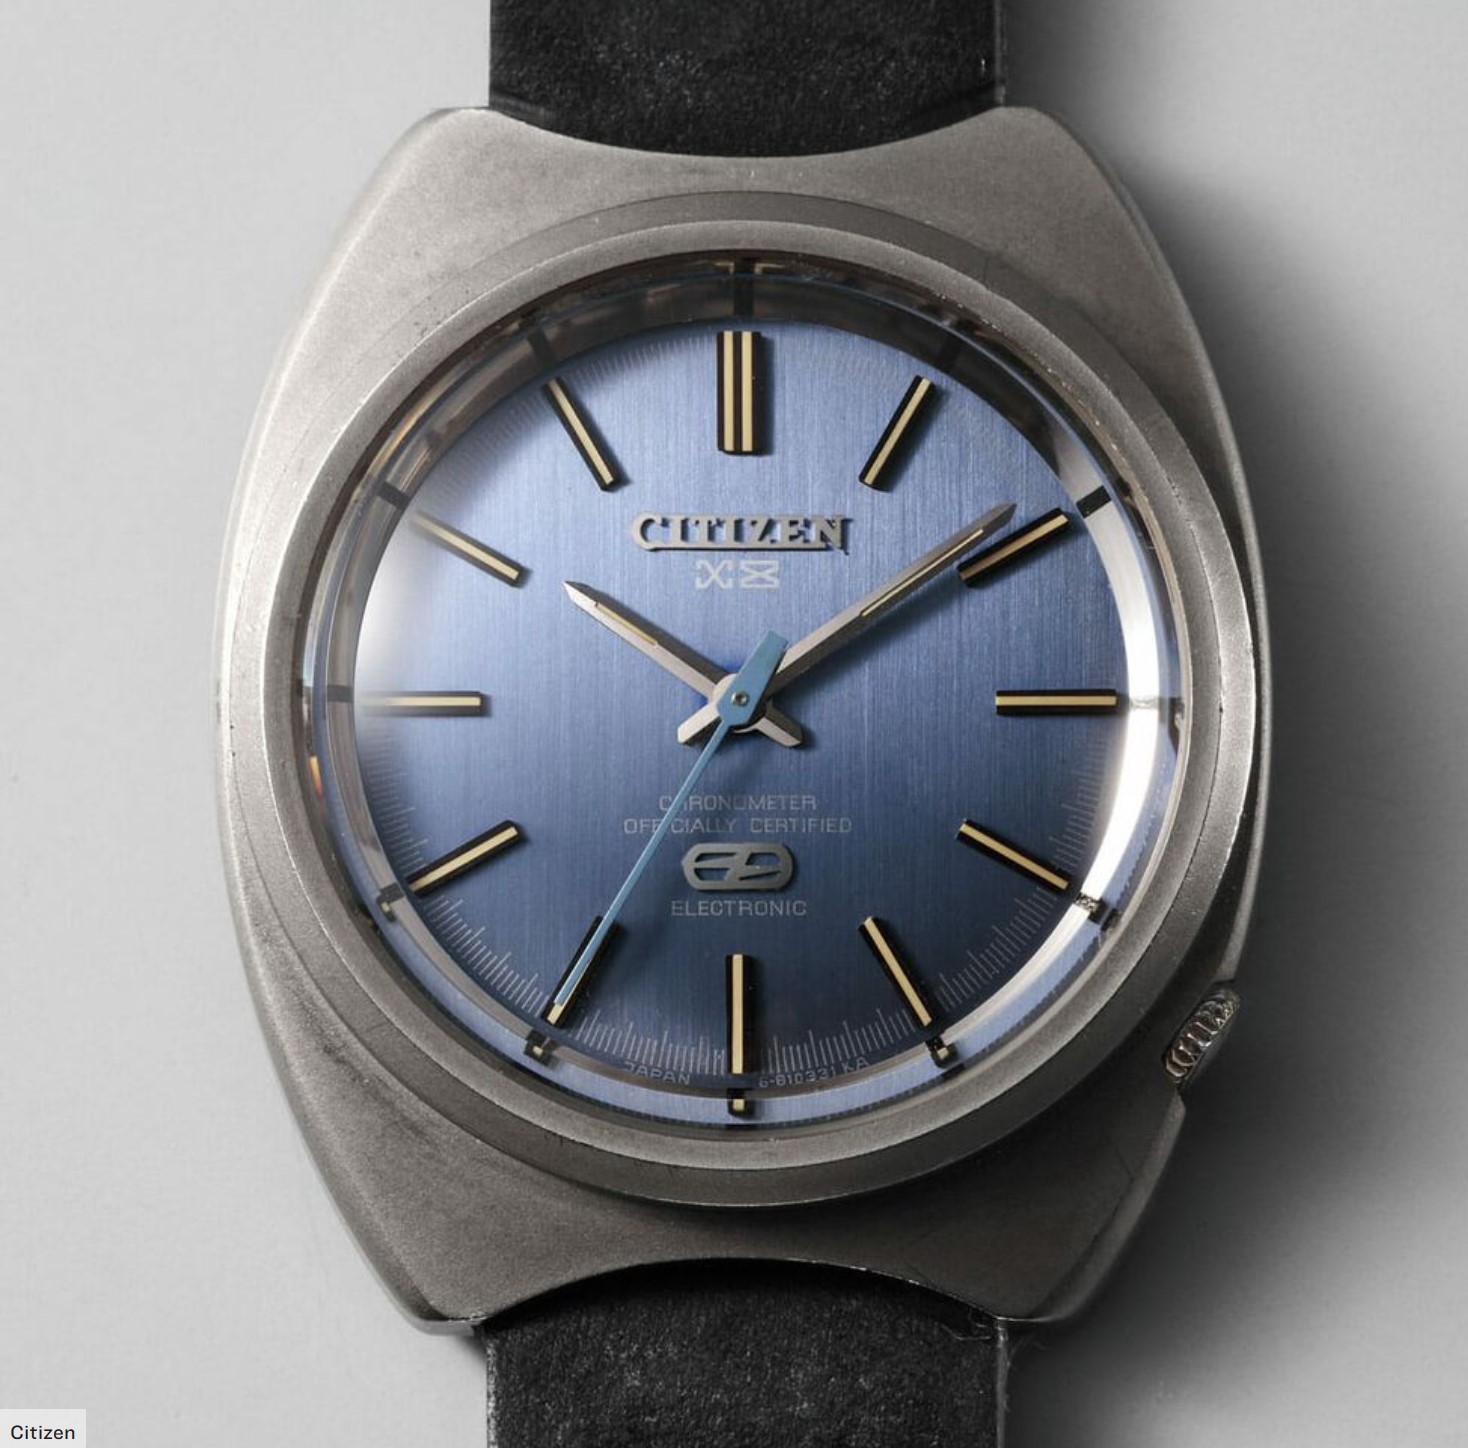 Citizen X-8 Chronometer.jpg